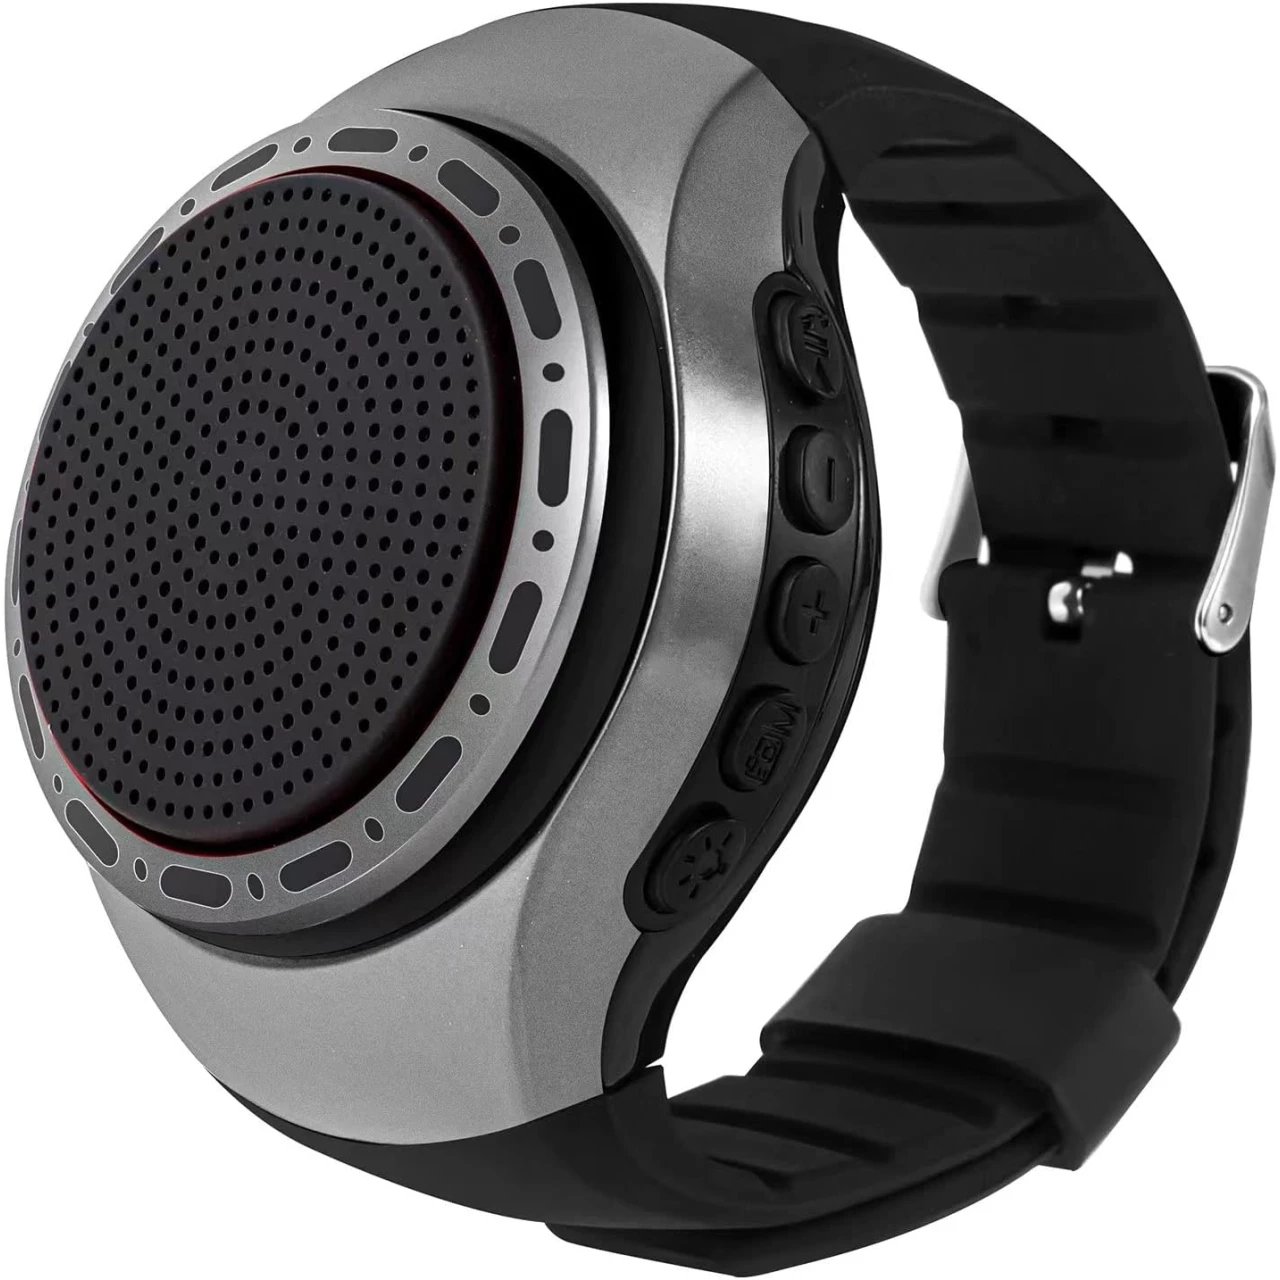 Upgraded Wearable Waterproof Wireless Wrist Portable Sports Bluetooth Speaker Watch